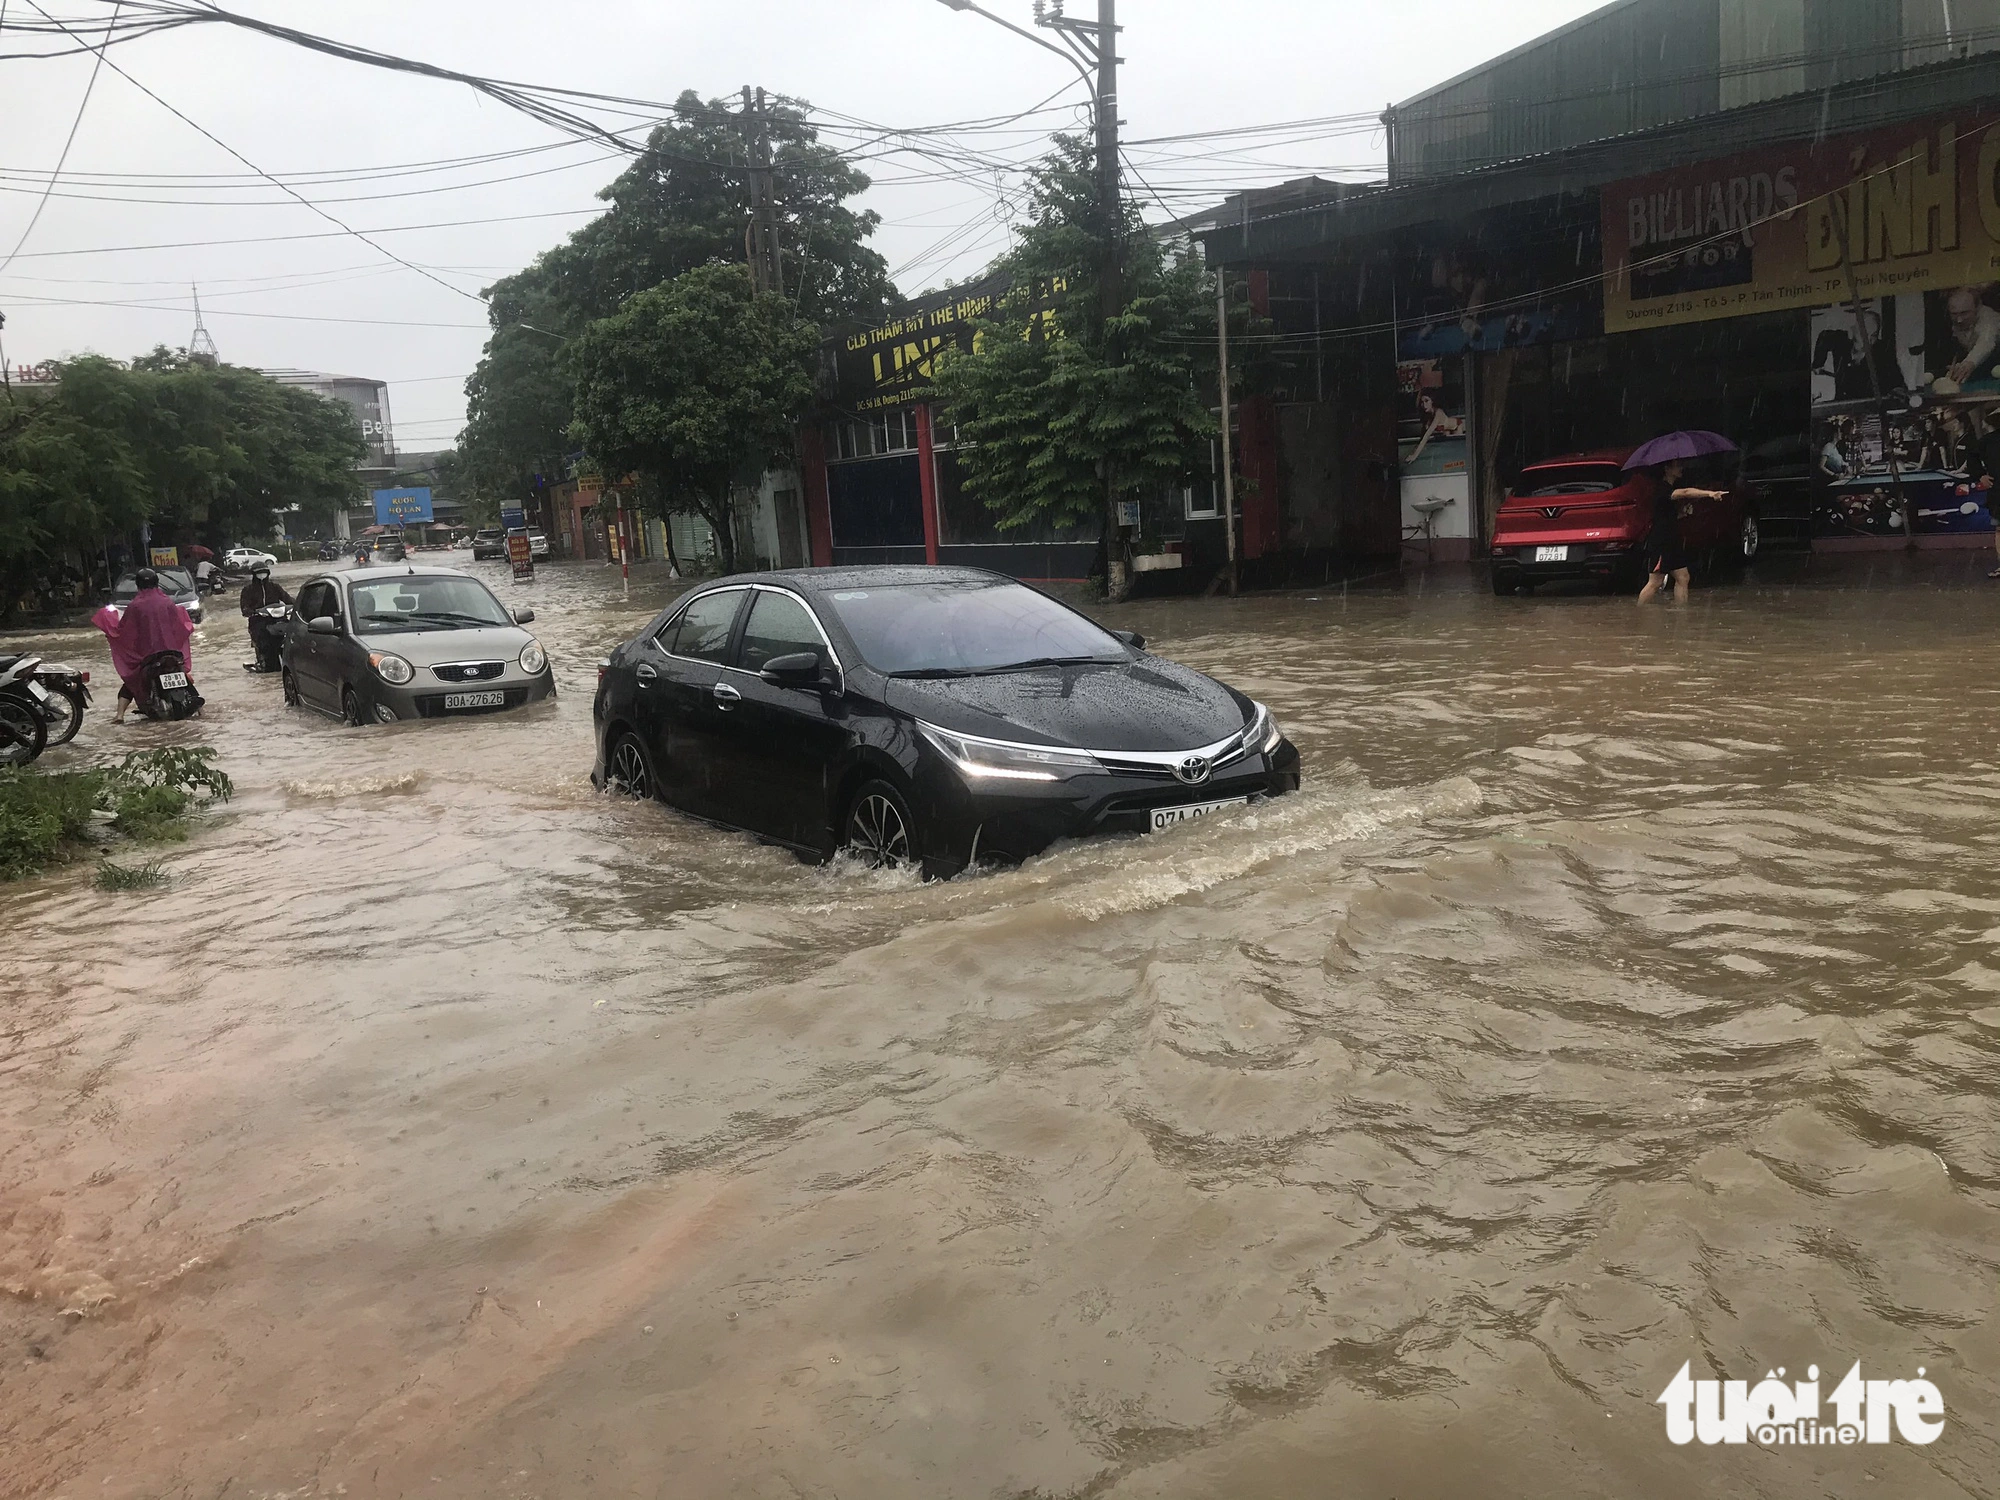 Hour-long rain leaves downtown roads underwater in Vietnam’s Thai Nguyen